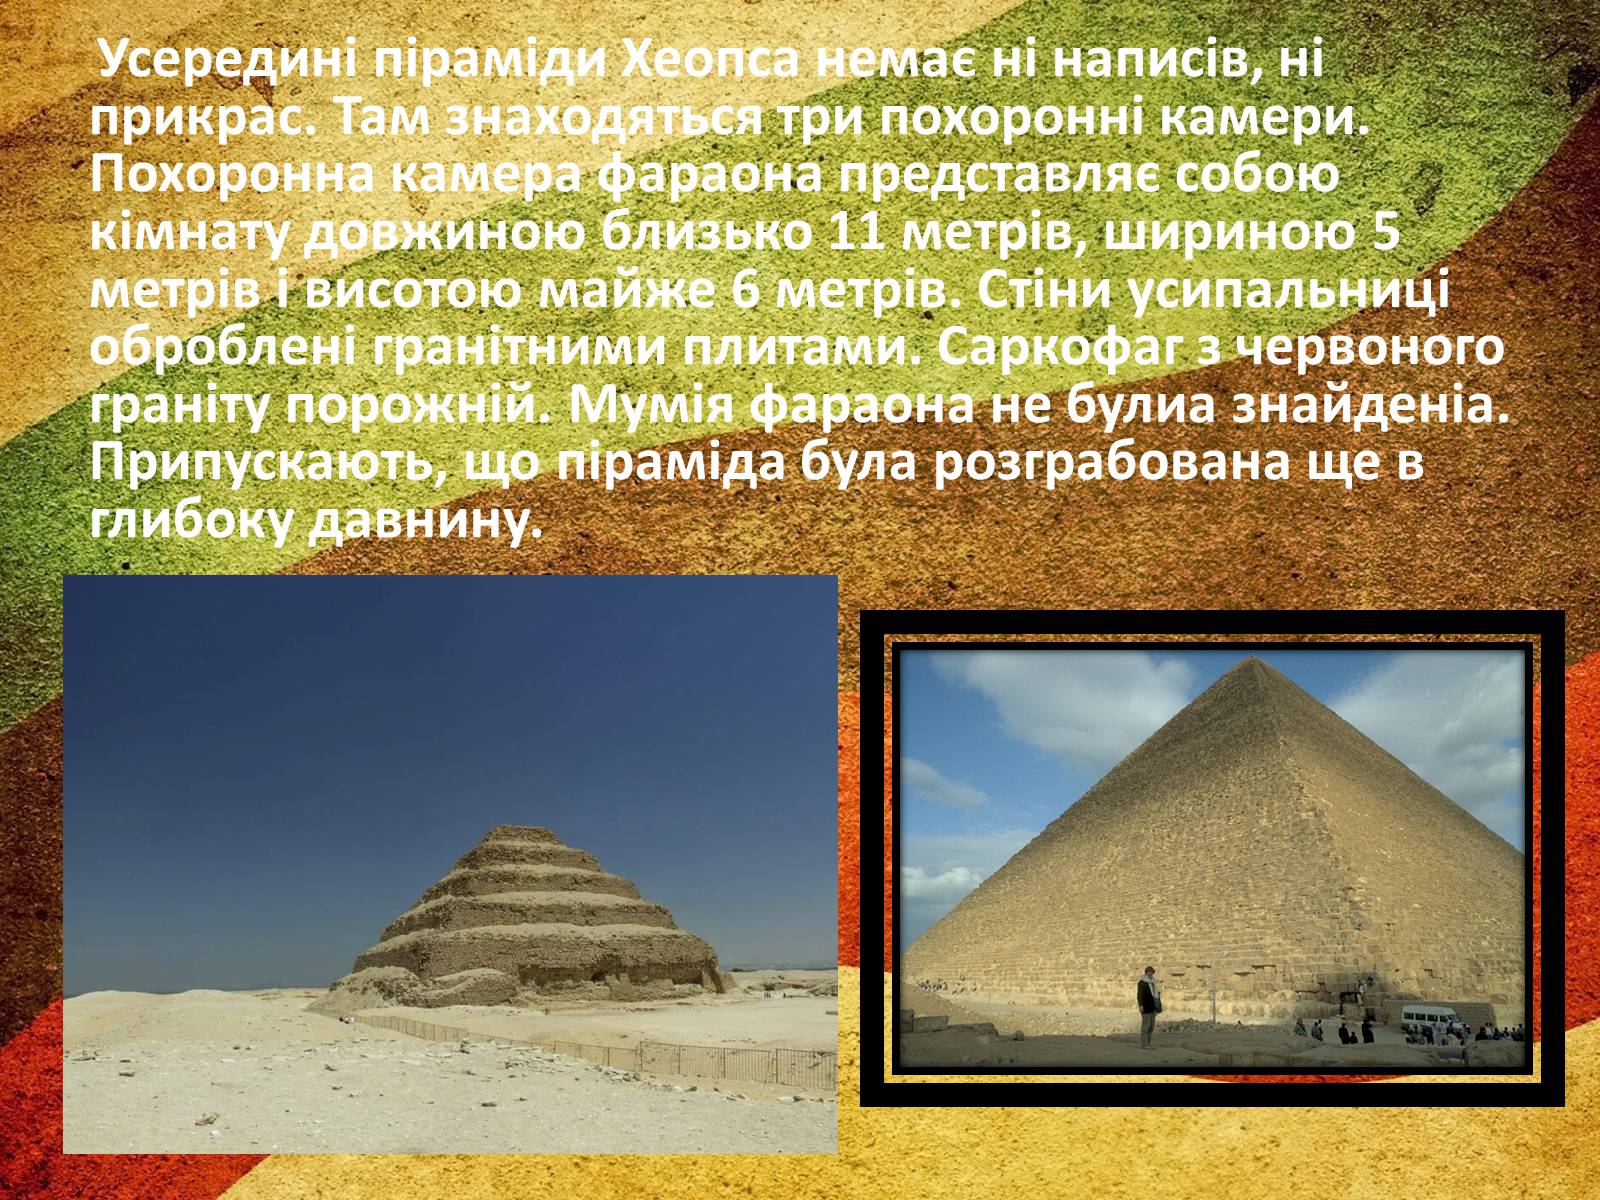 Два исторических факта о пирамиде хеопса. Интересные факты о пирамидах. Пирамида для презентации. Пирамида на английском. Презентация про пирамиды в обычной жизни.